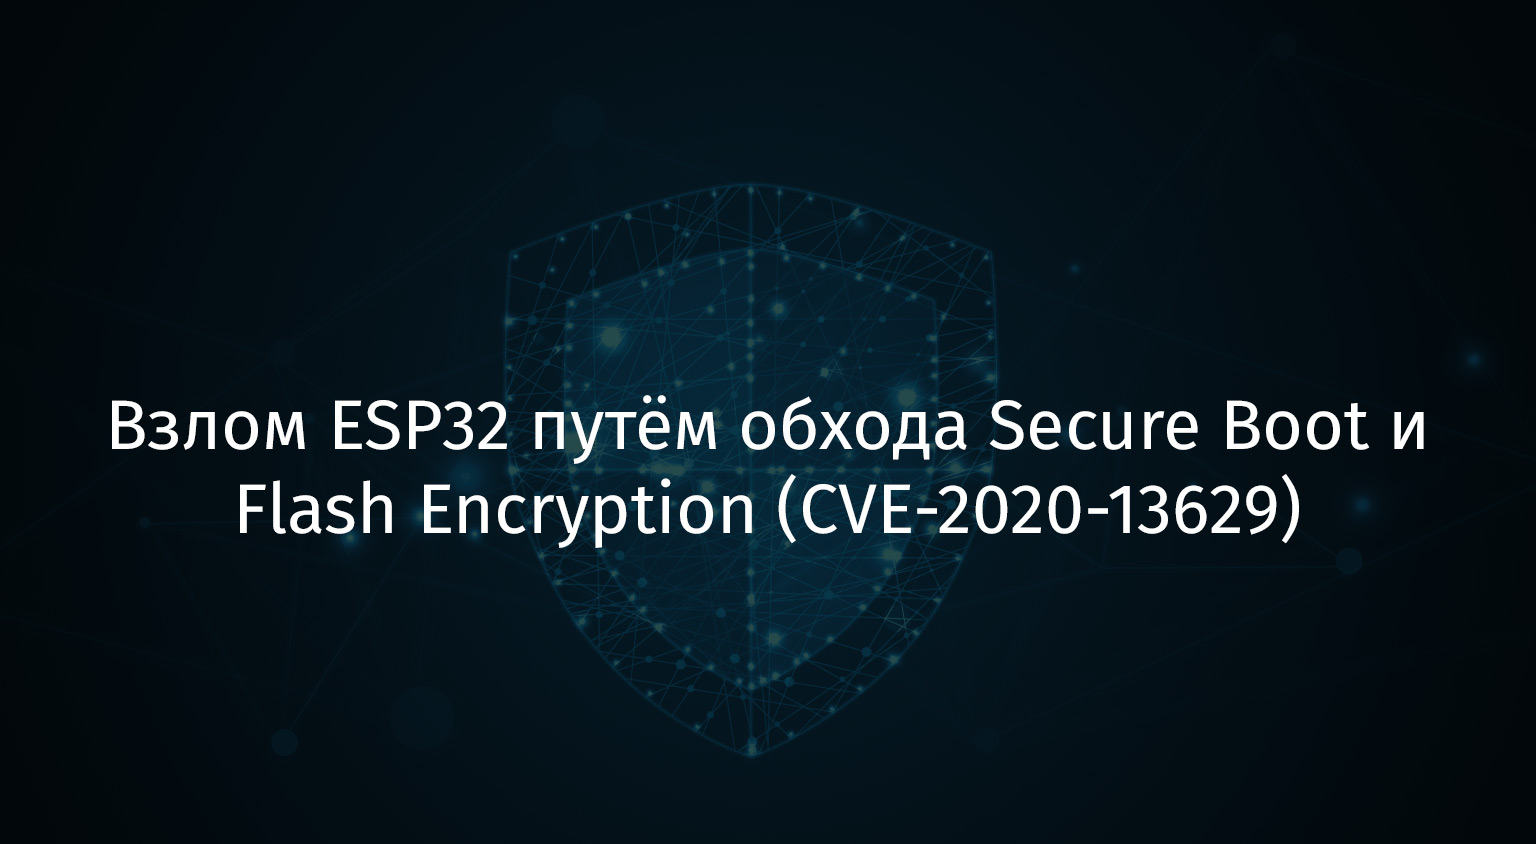 Взлом ESP32 путём обхода Secure Boot и Flash Encryption (CVE-2020-13629) - 1